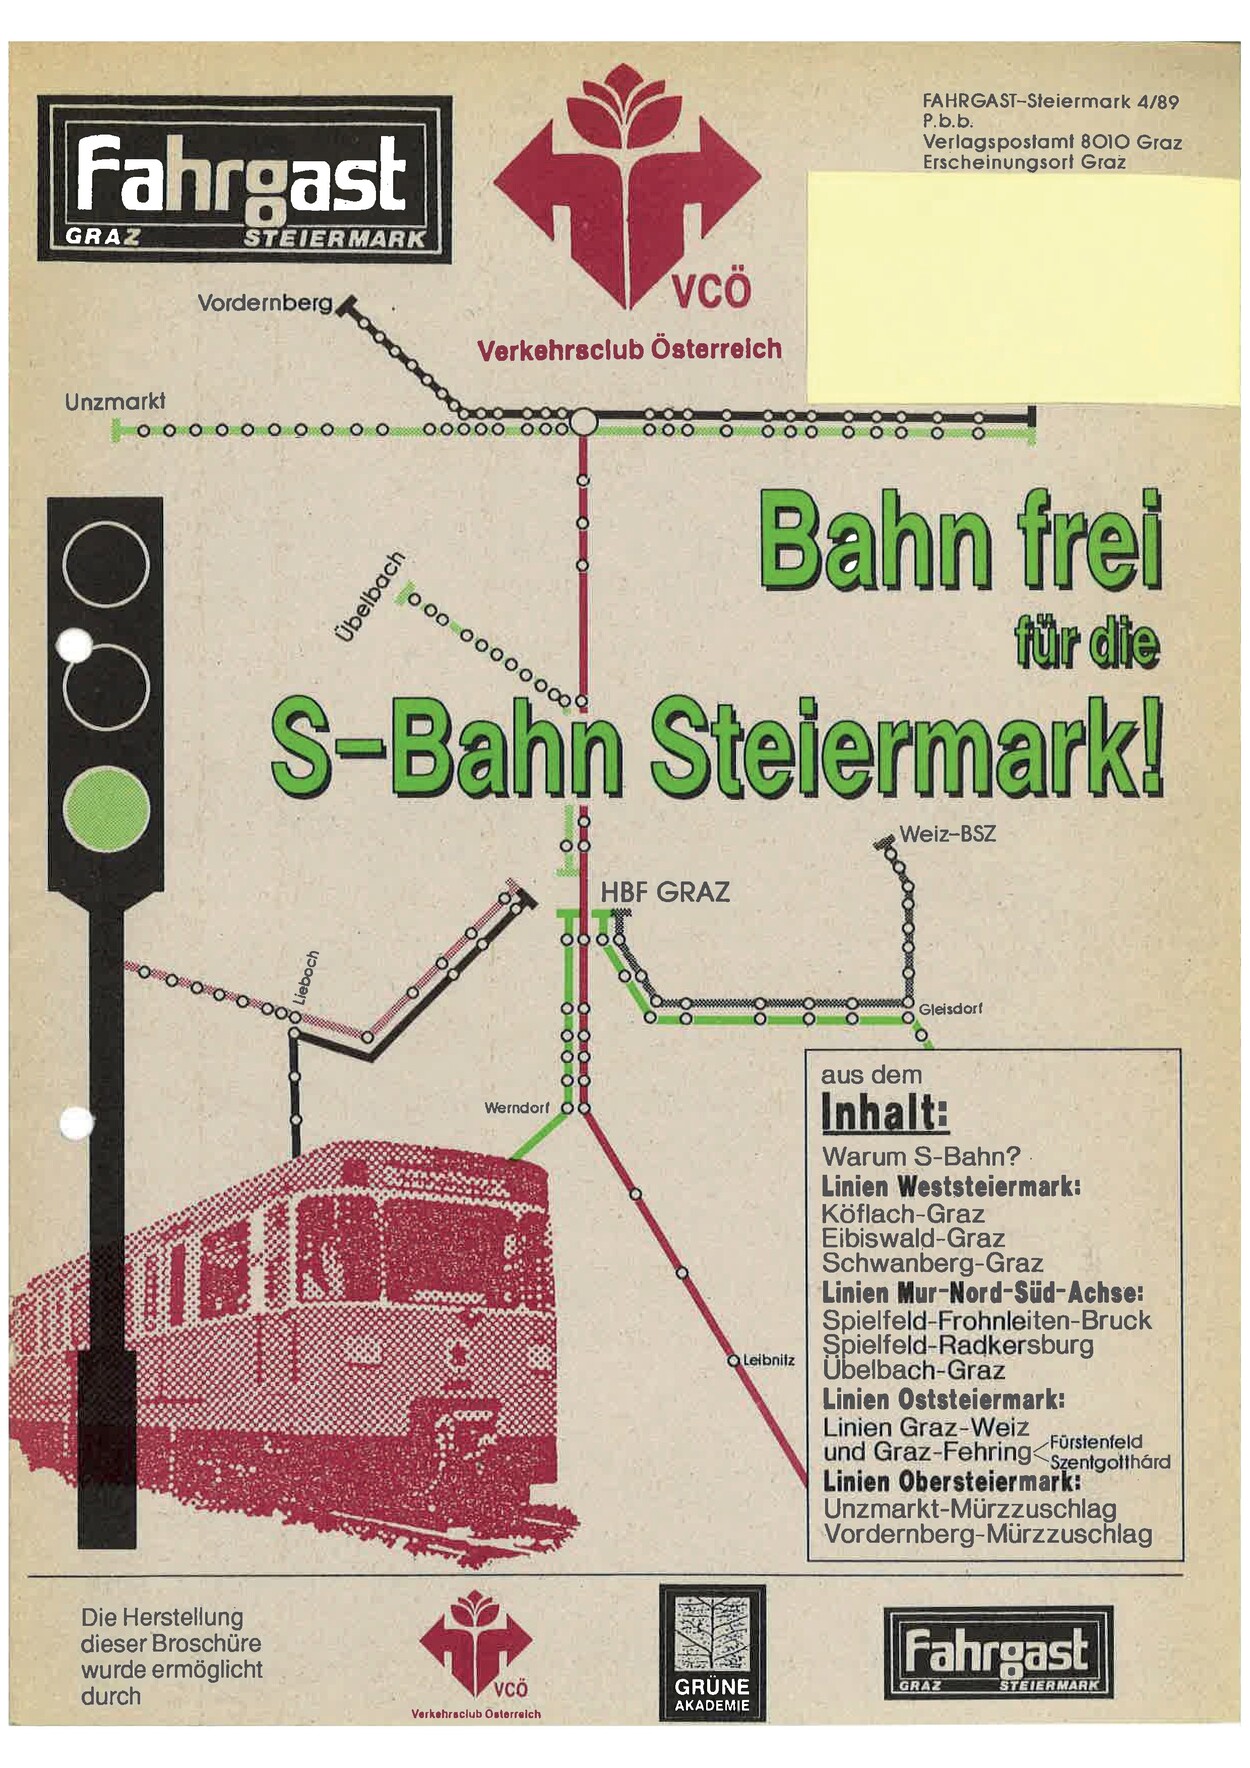 15 Jahre S-Bahn Steiermark: Fahrgast Steiermark gratuliert und fordert weitere Verbesserungen